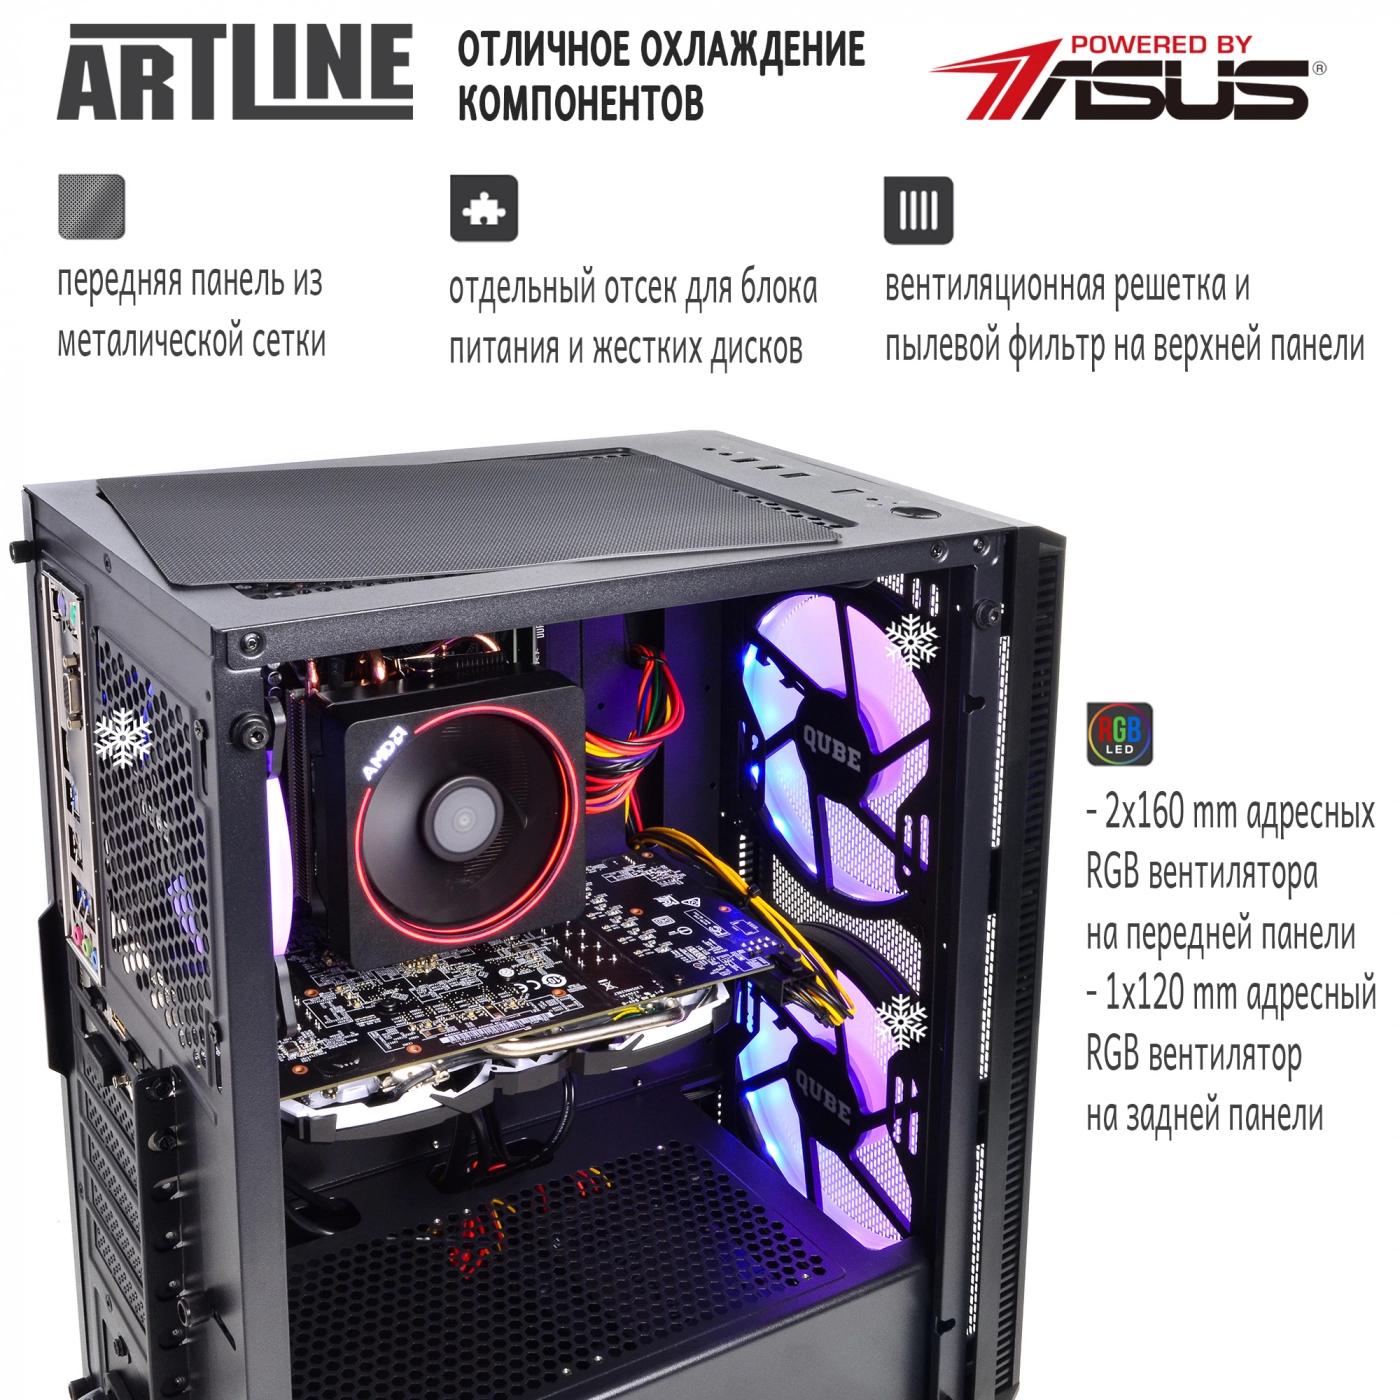 Купить Компьютер ARTLINE Gaming X60v03 - фото 2